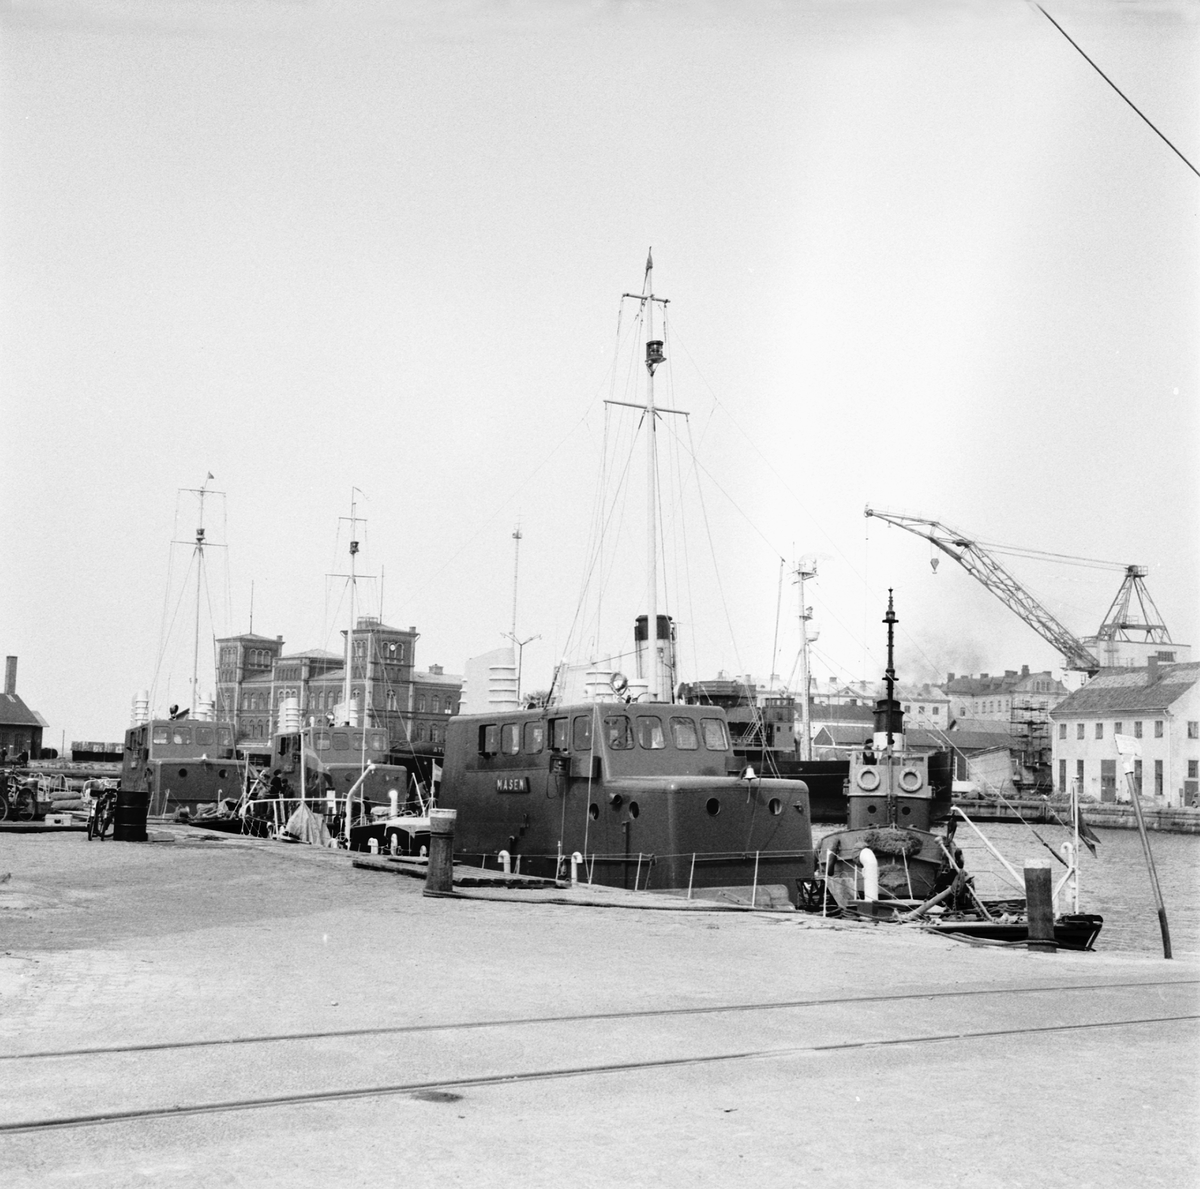 Sjömätningsfartyg M/s Tärna vid verkstadskajen